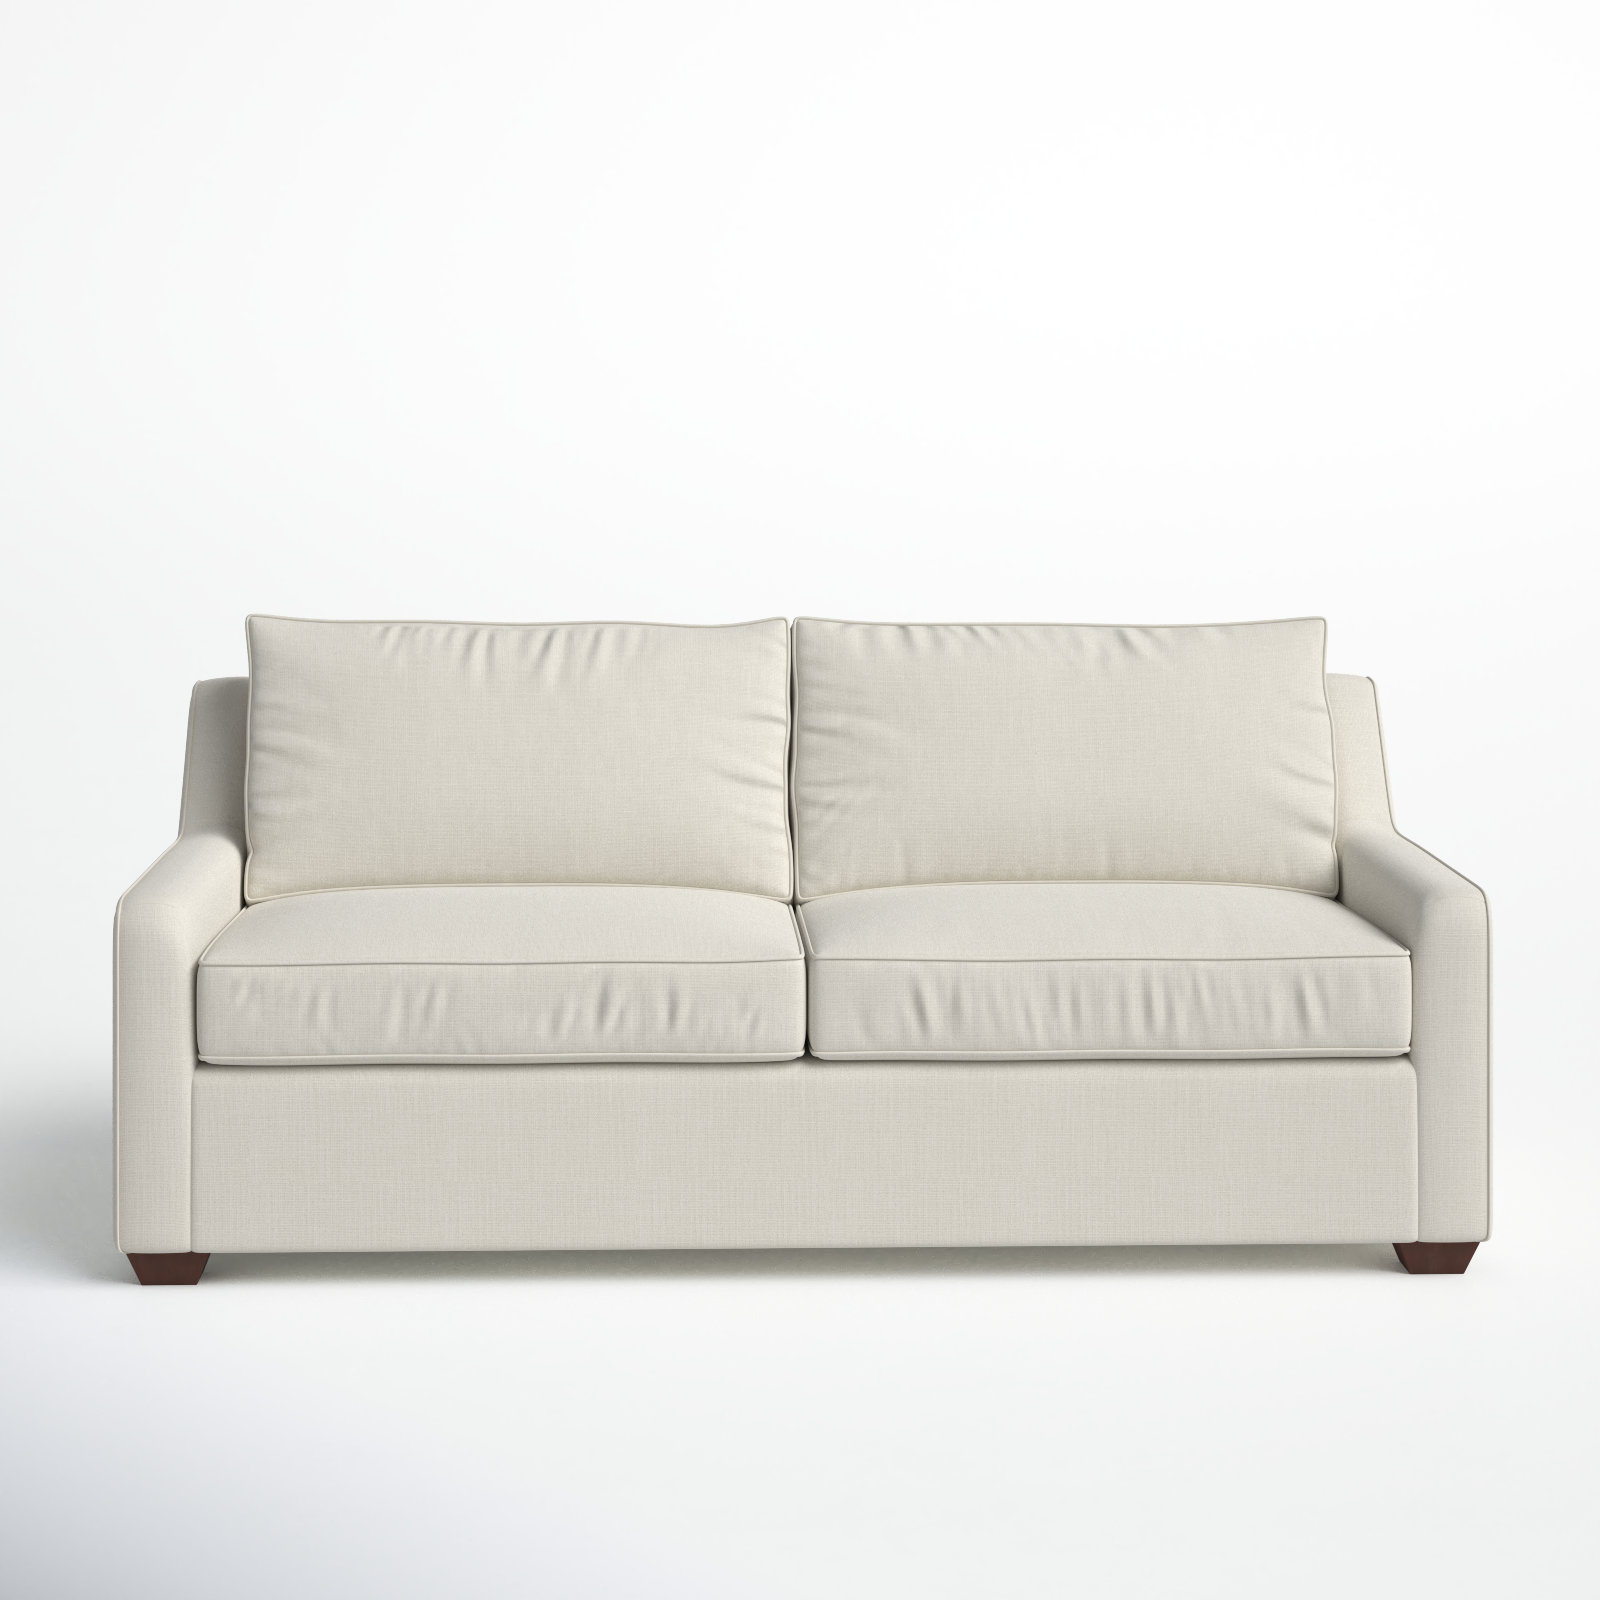 https://assets.wfcdn.com/im/01873772/compr-r85/2647/264795296/godwin-72-upholstered-sleeper-sofa.jpg